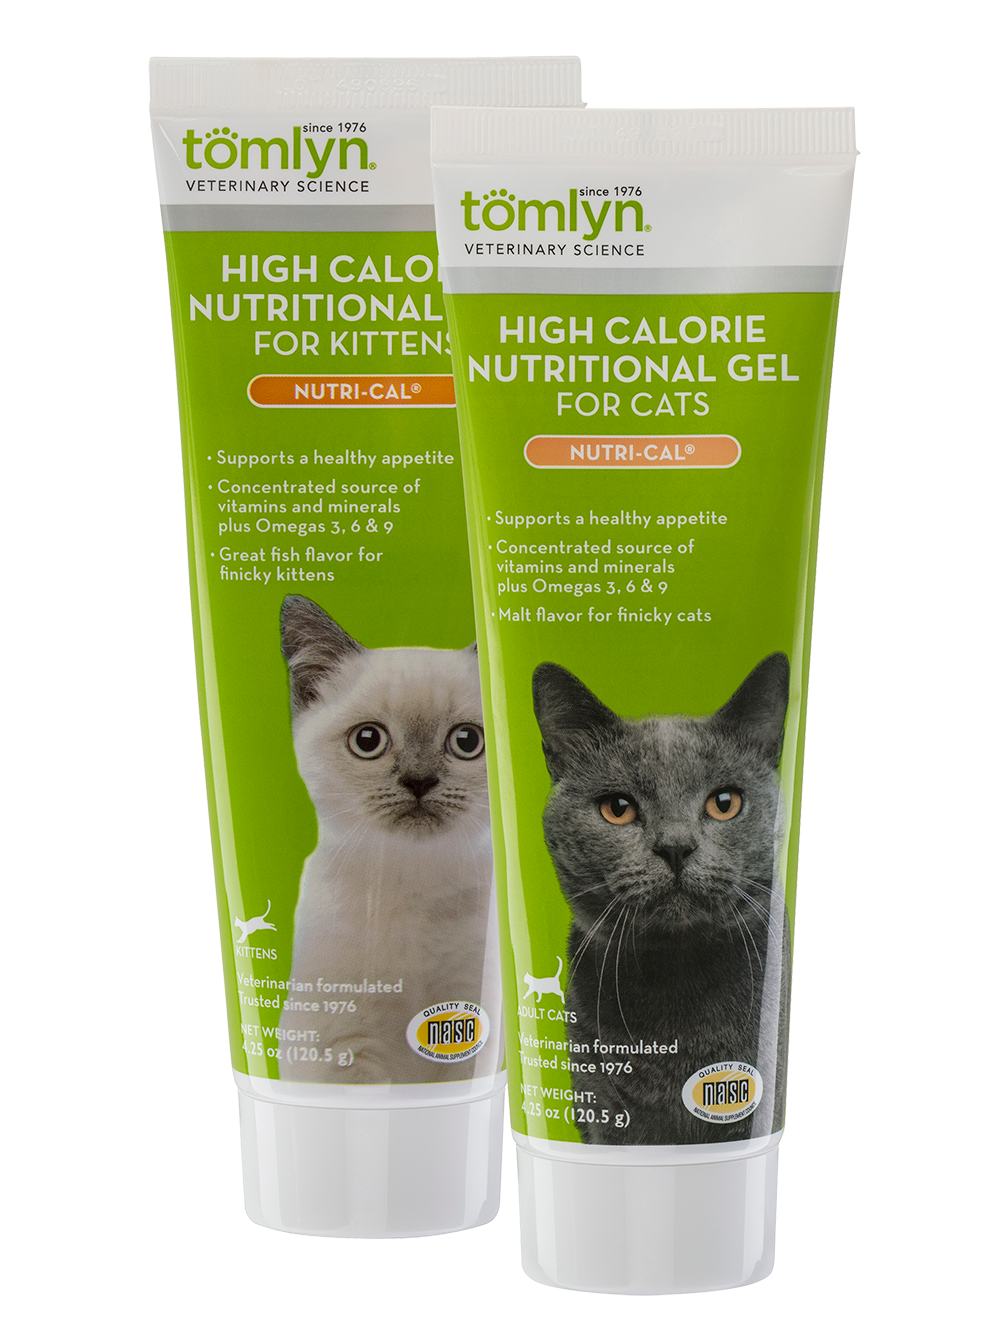 Nutri-Cal - Kitten, 4.25 oz Gel высококалорийный гель для котят и кошек 120,5 гр.(США) / (Tomlyn)